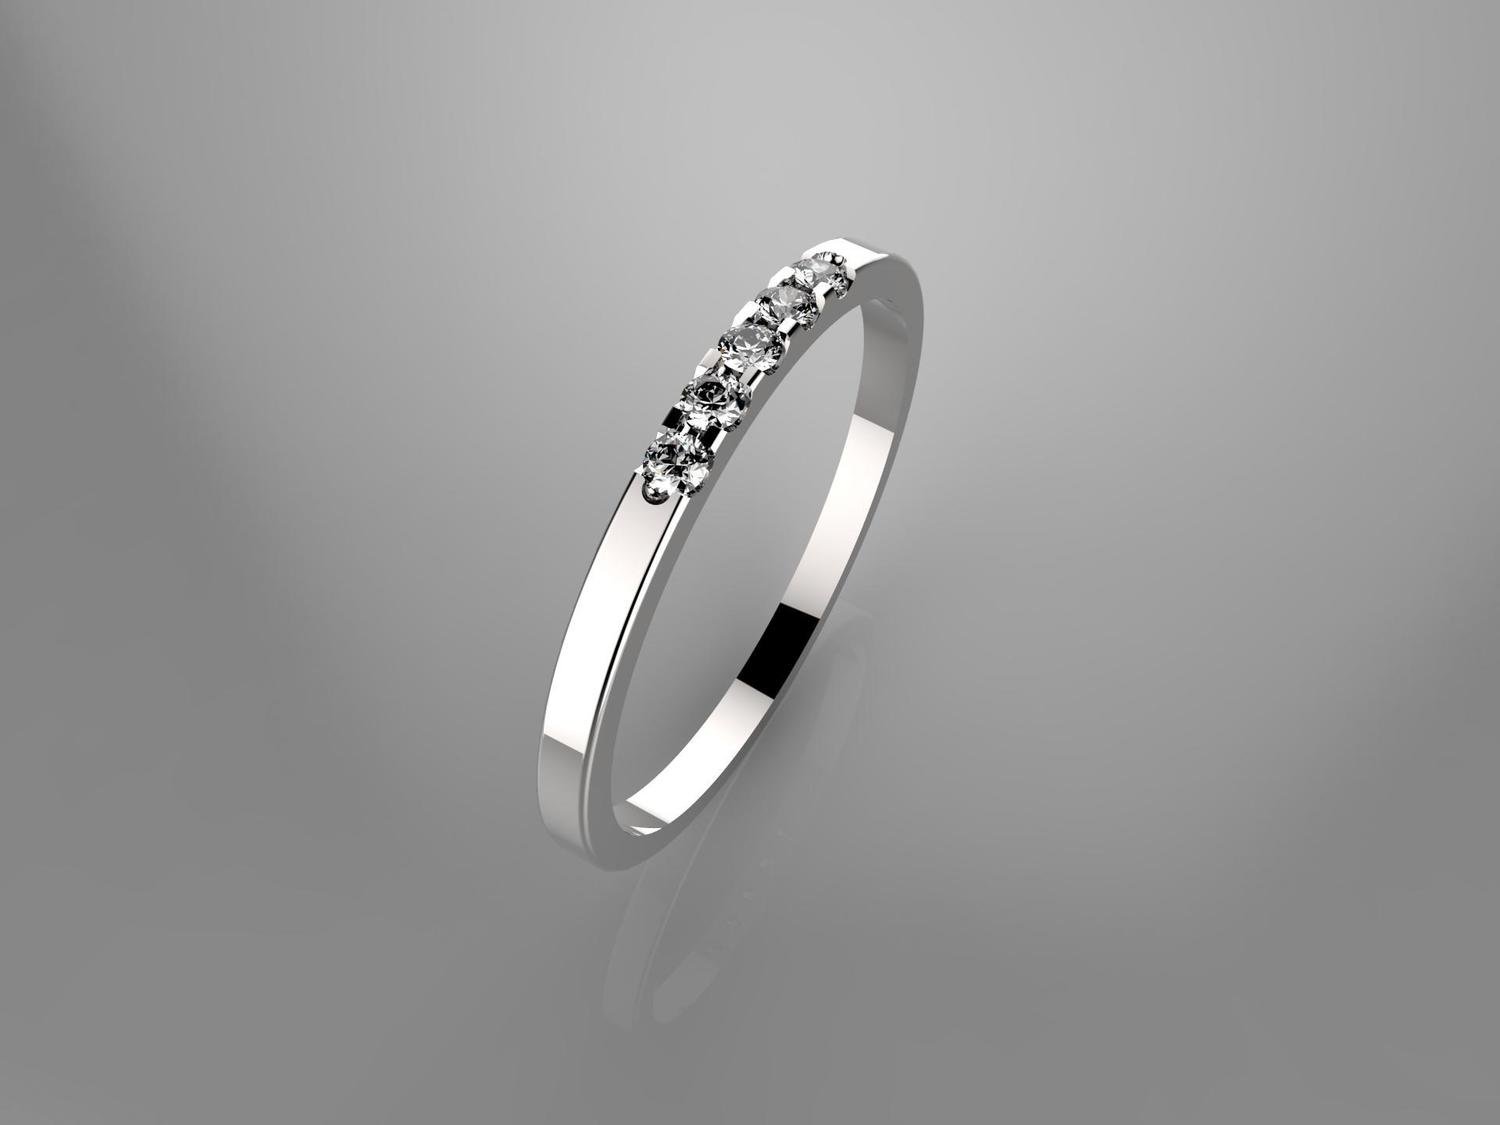 3Д файл модели обручального кольца,5 камней,размер 16.5